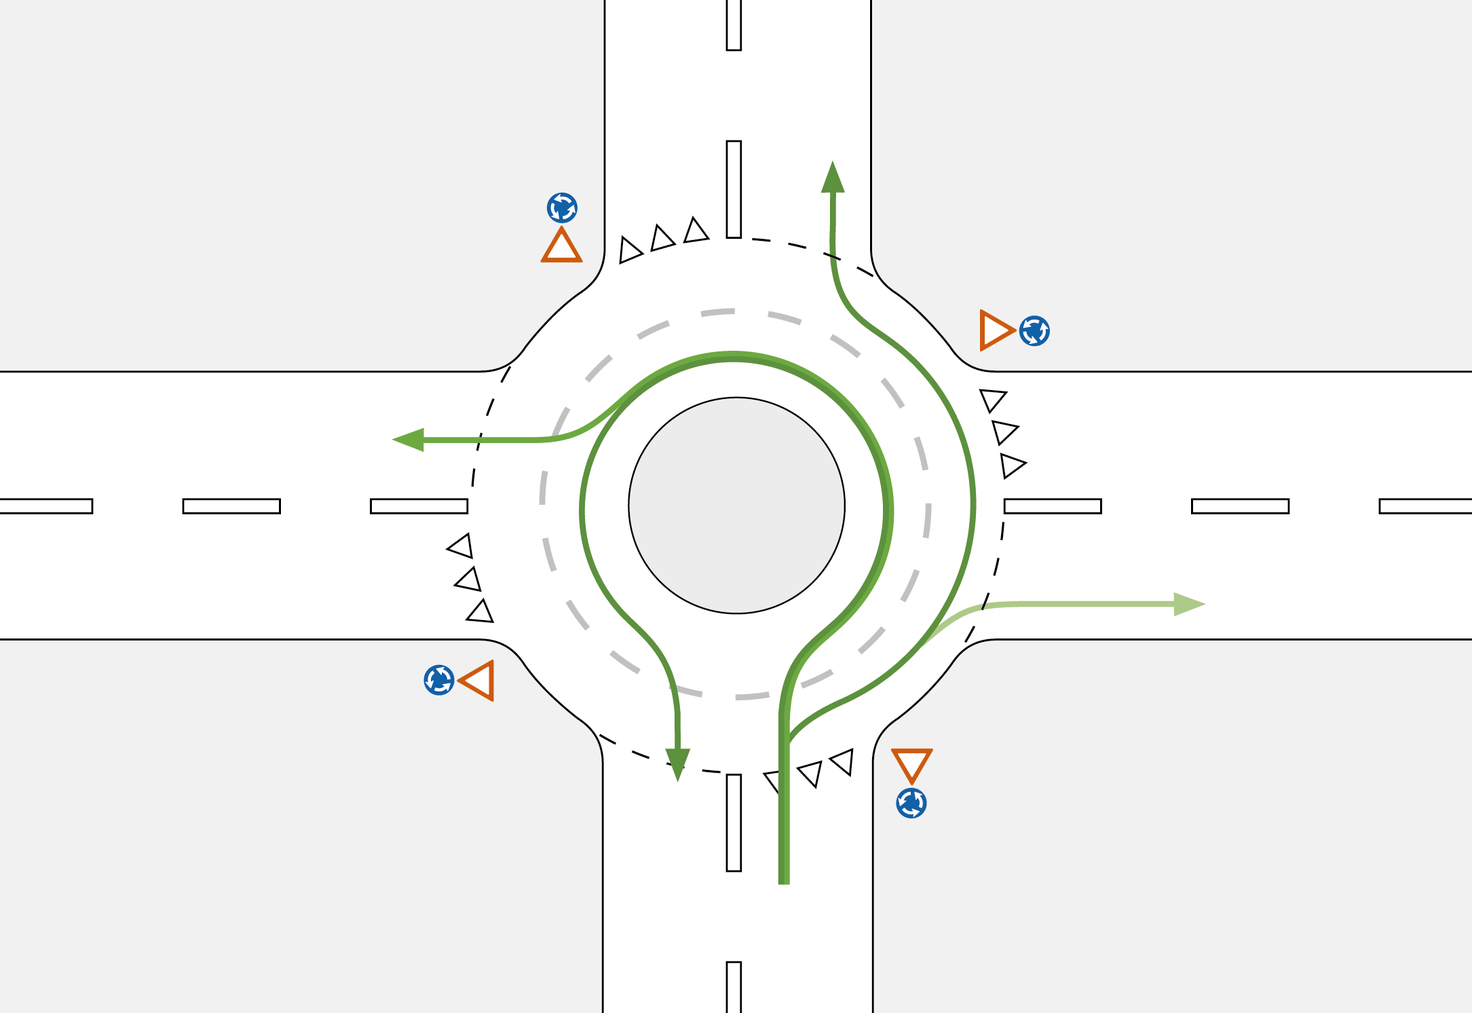 Für die erste und zweite Ausfahrt nutzt man die rechte Spur im Doppelkreisel. (Bild: Beratungsstelle für Unfallverhütung bfu)